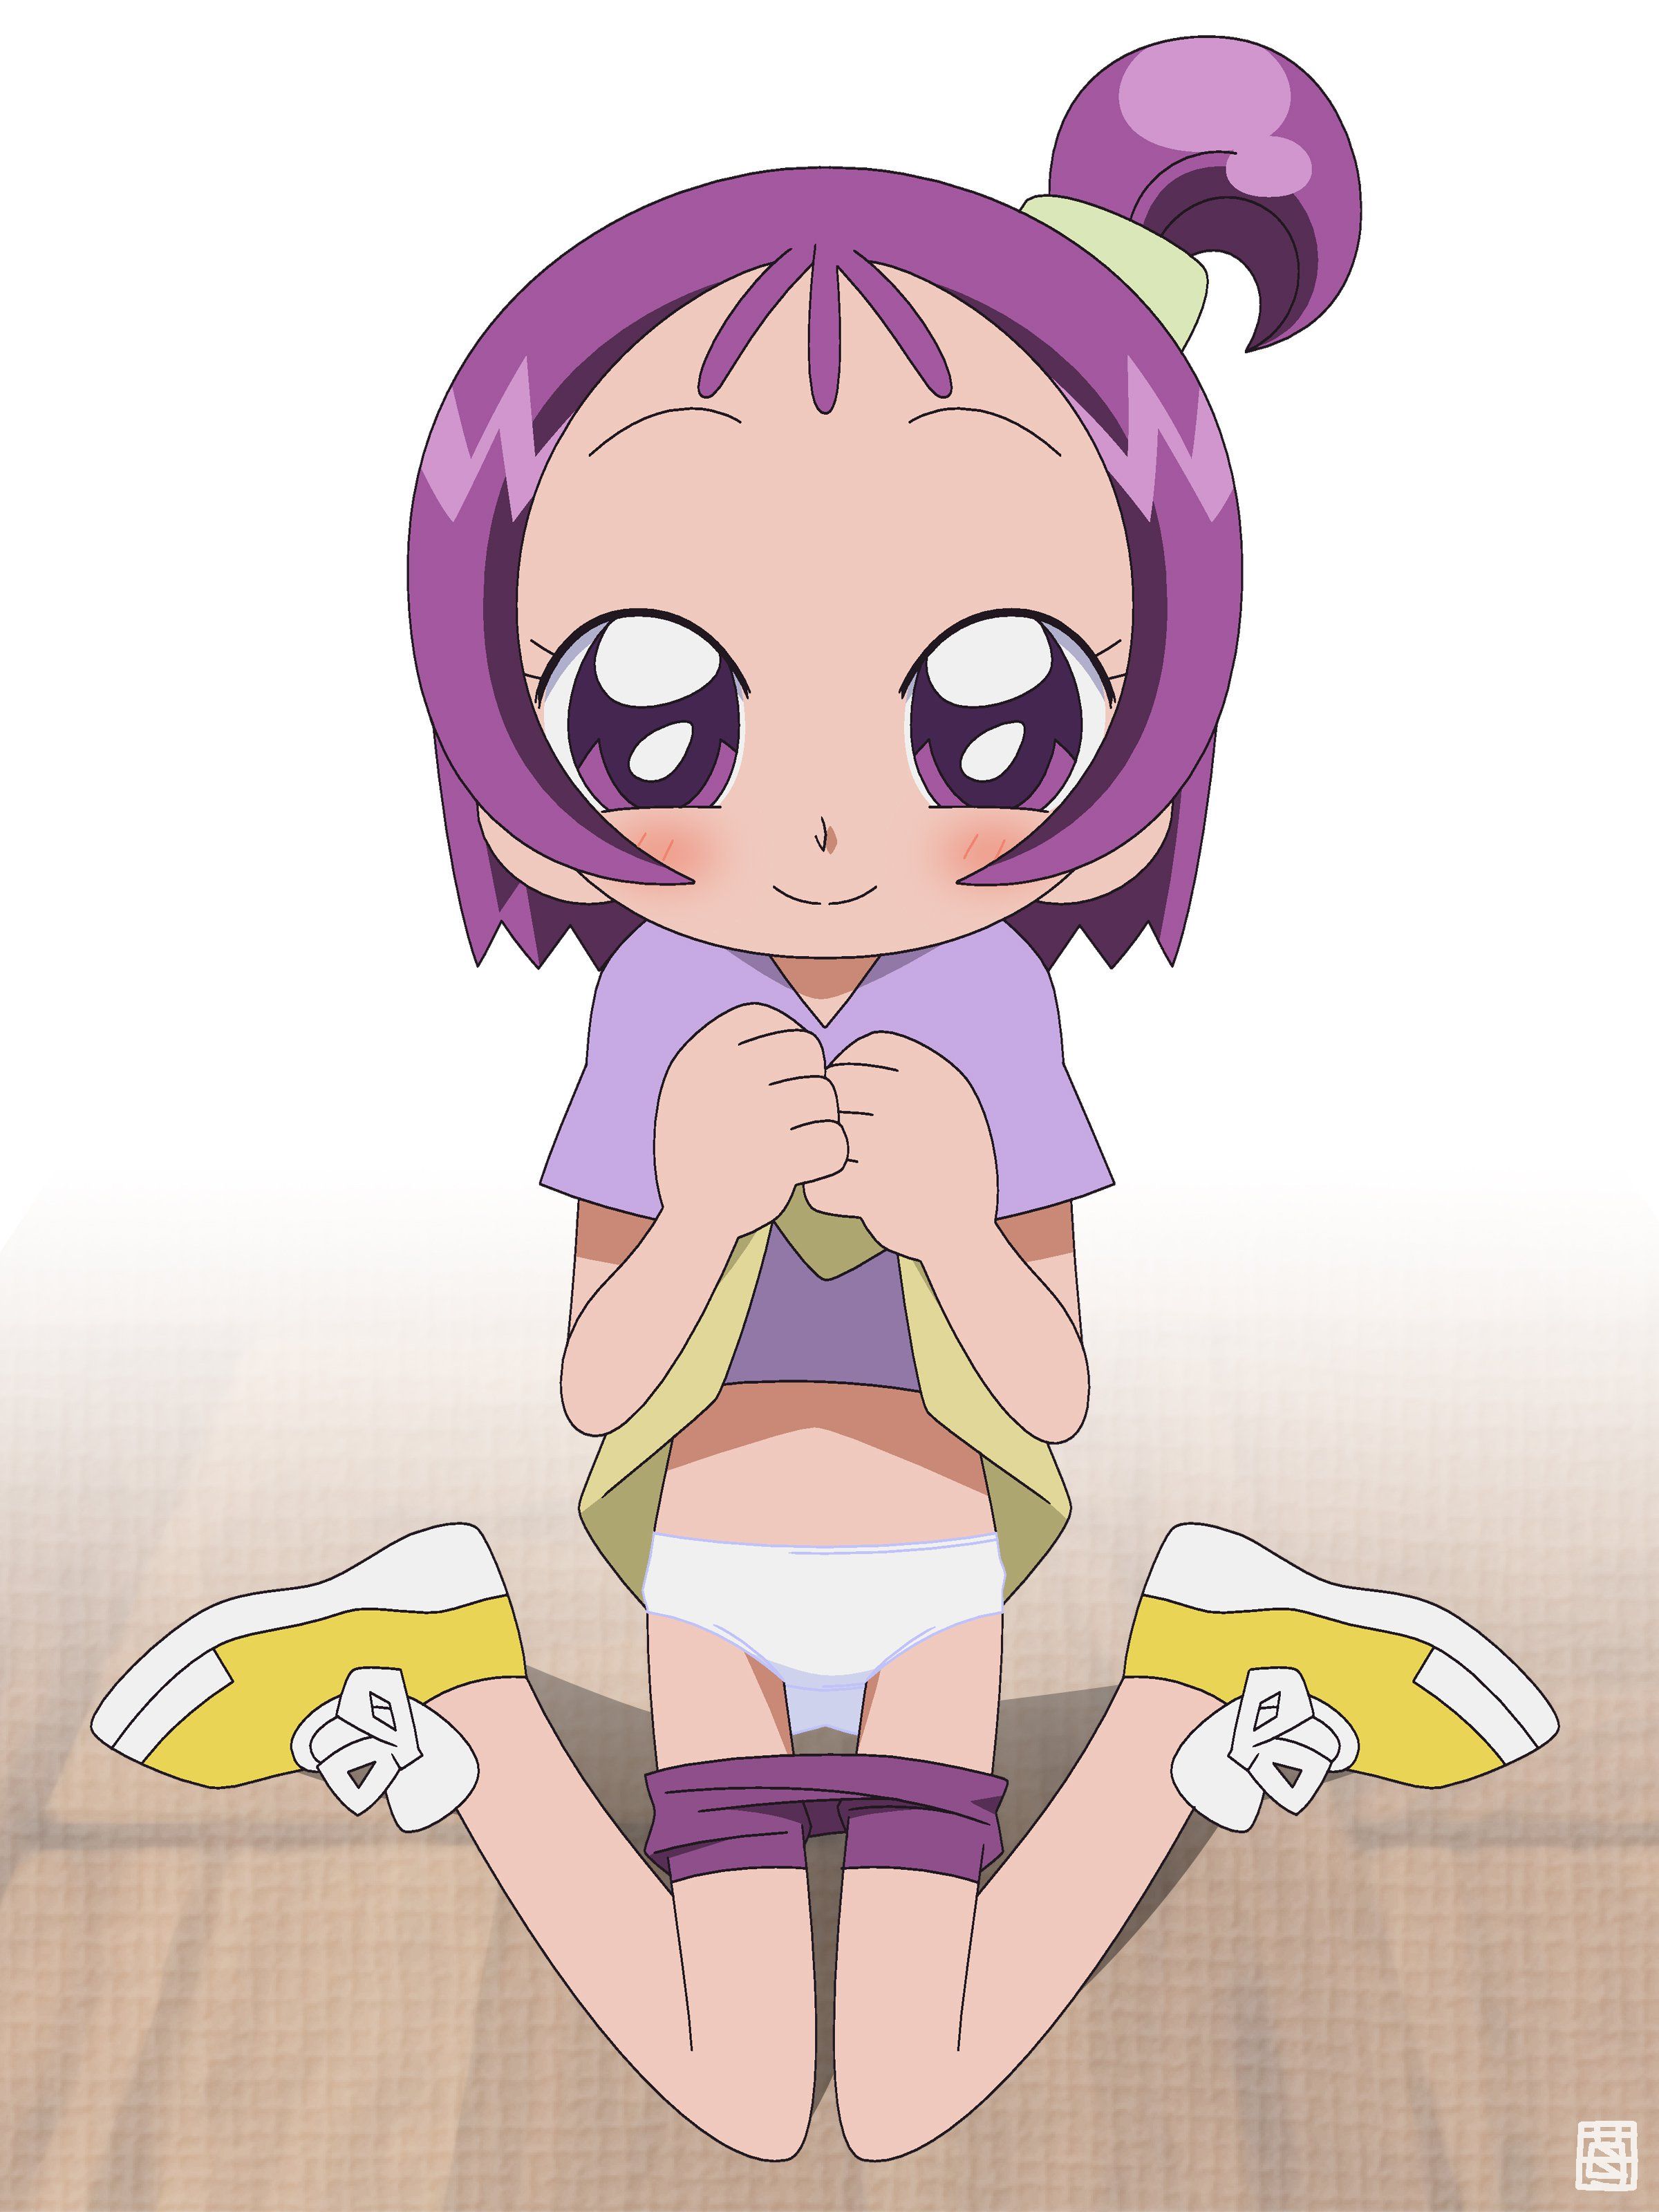 [Segawa Onpu-chan (Oja witch Domi)] JS Lori magical girl of Oja witch Domi, secondary erotic image of MAHdo magical girl Segawa Onpu-chan in charge of purple 35